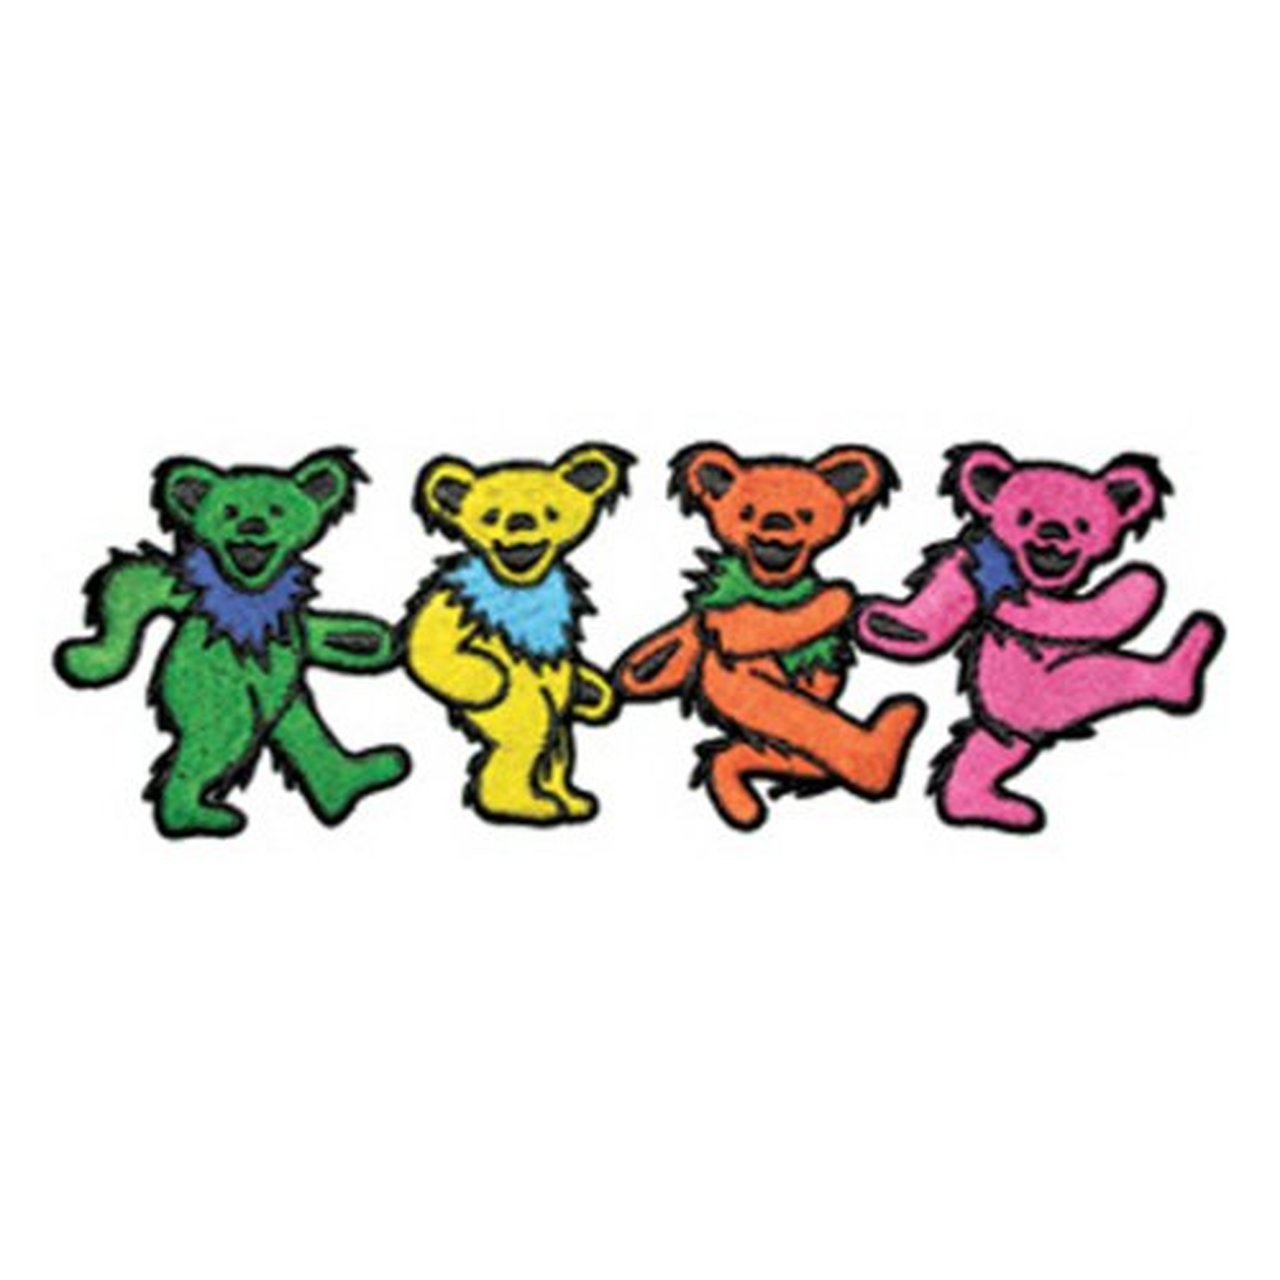 Grateful Dead Dancing Bears.